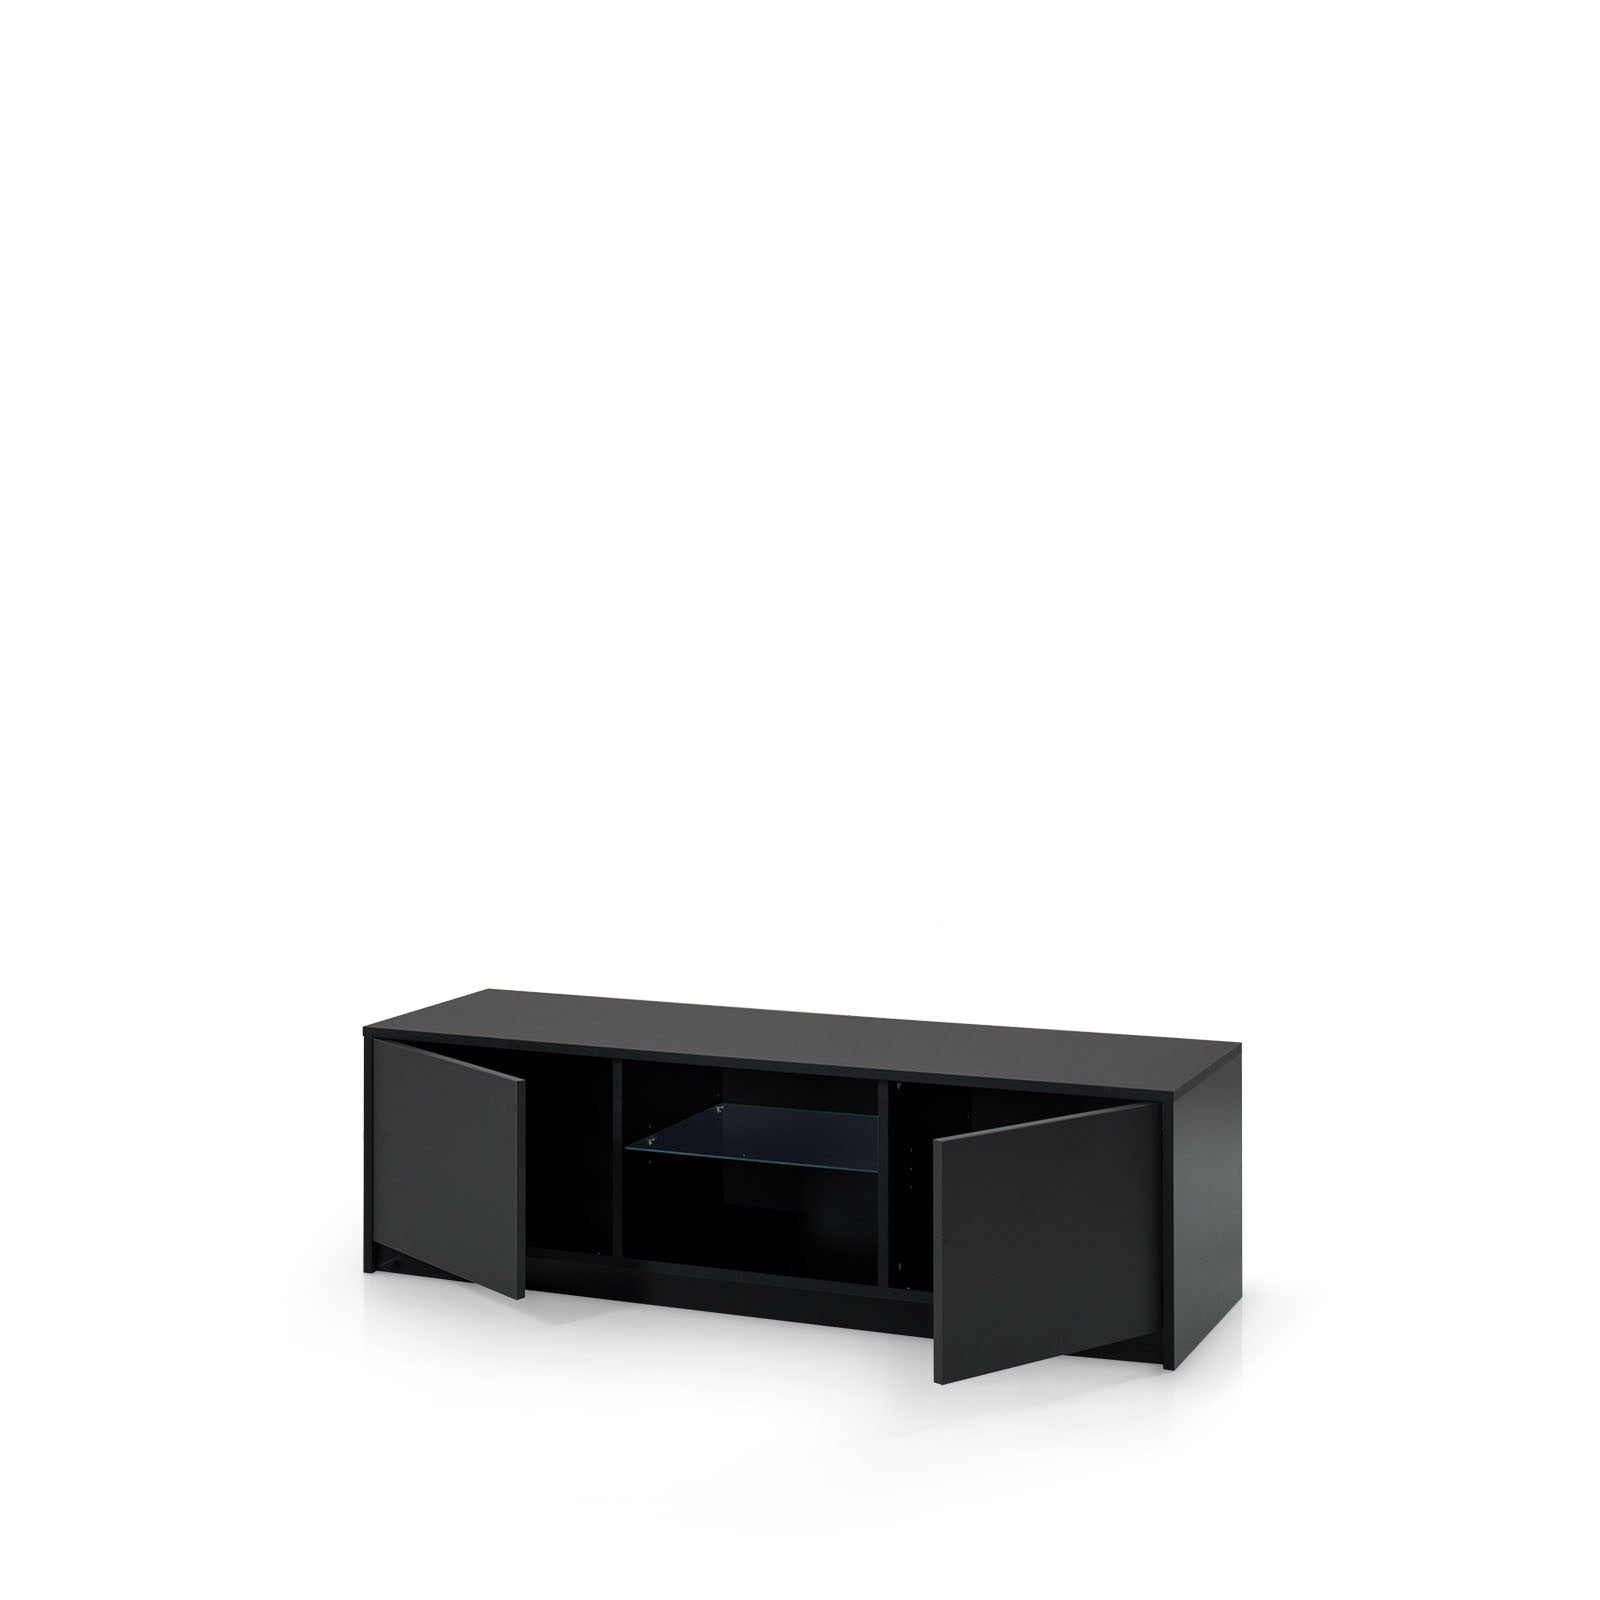 Mueble TV BOIS con estructura en melamina negra 